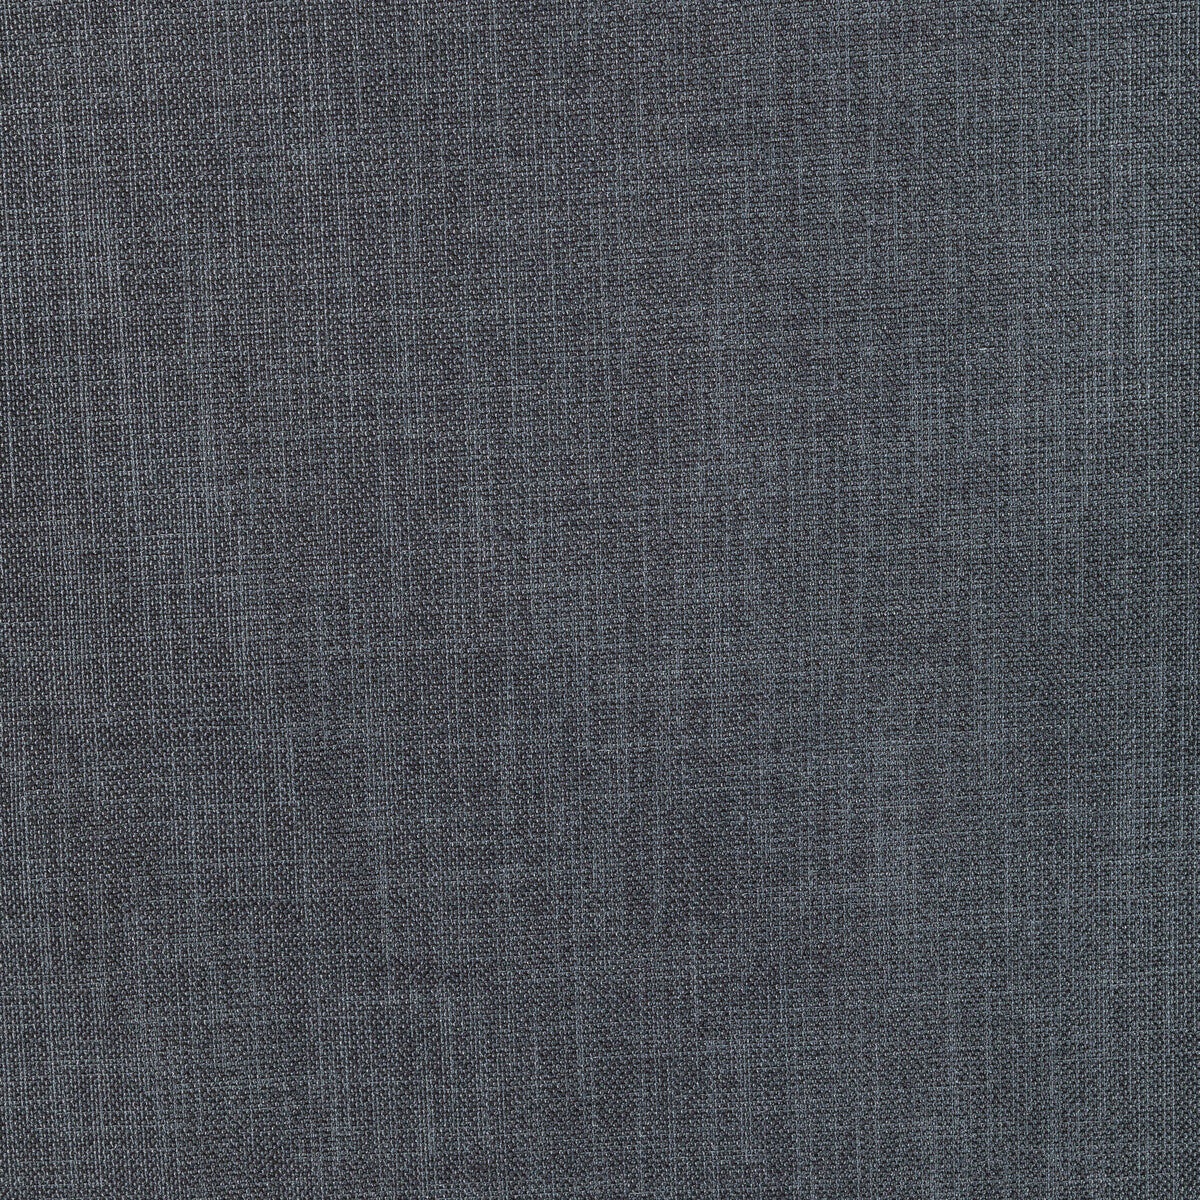 Kravet Basics fabric in 33120-52 color - pattern 33120.52.0 - by Kravet Basics